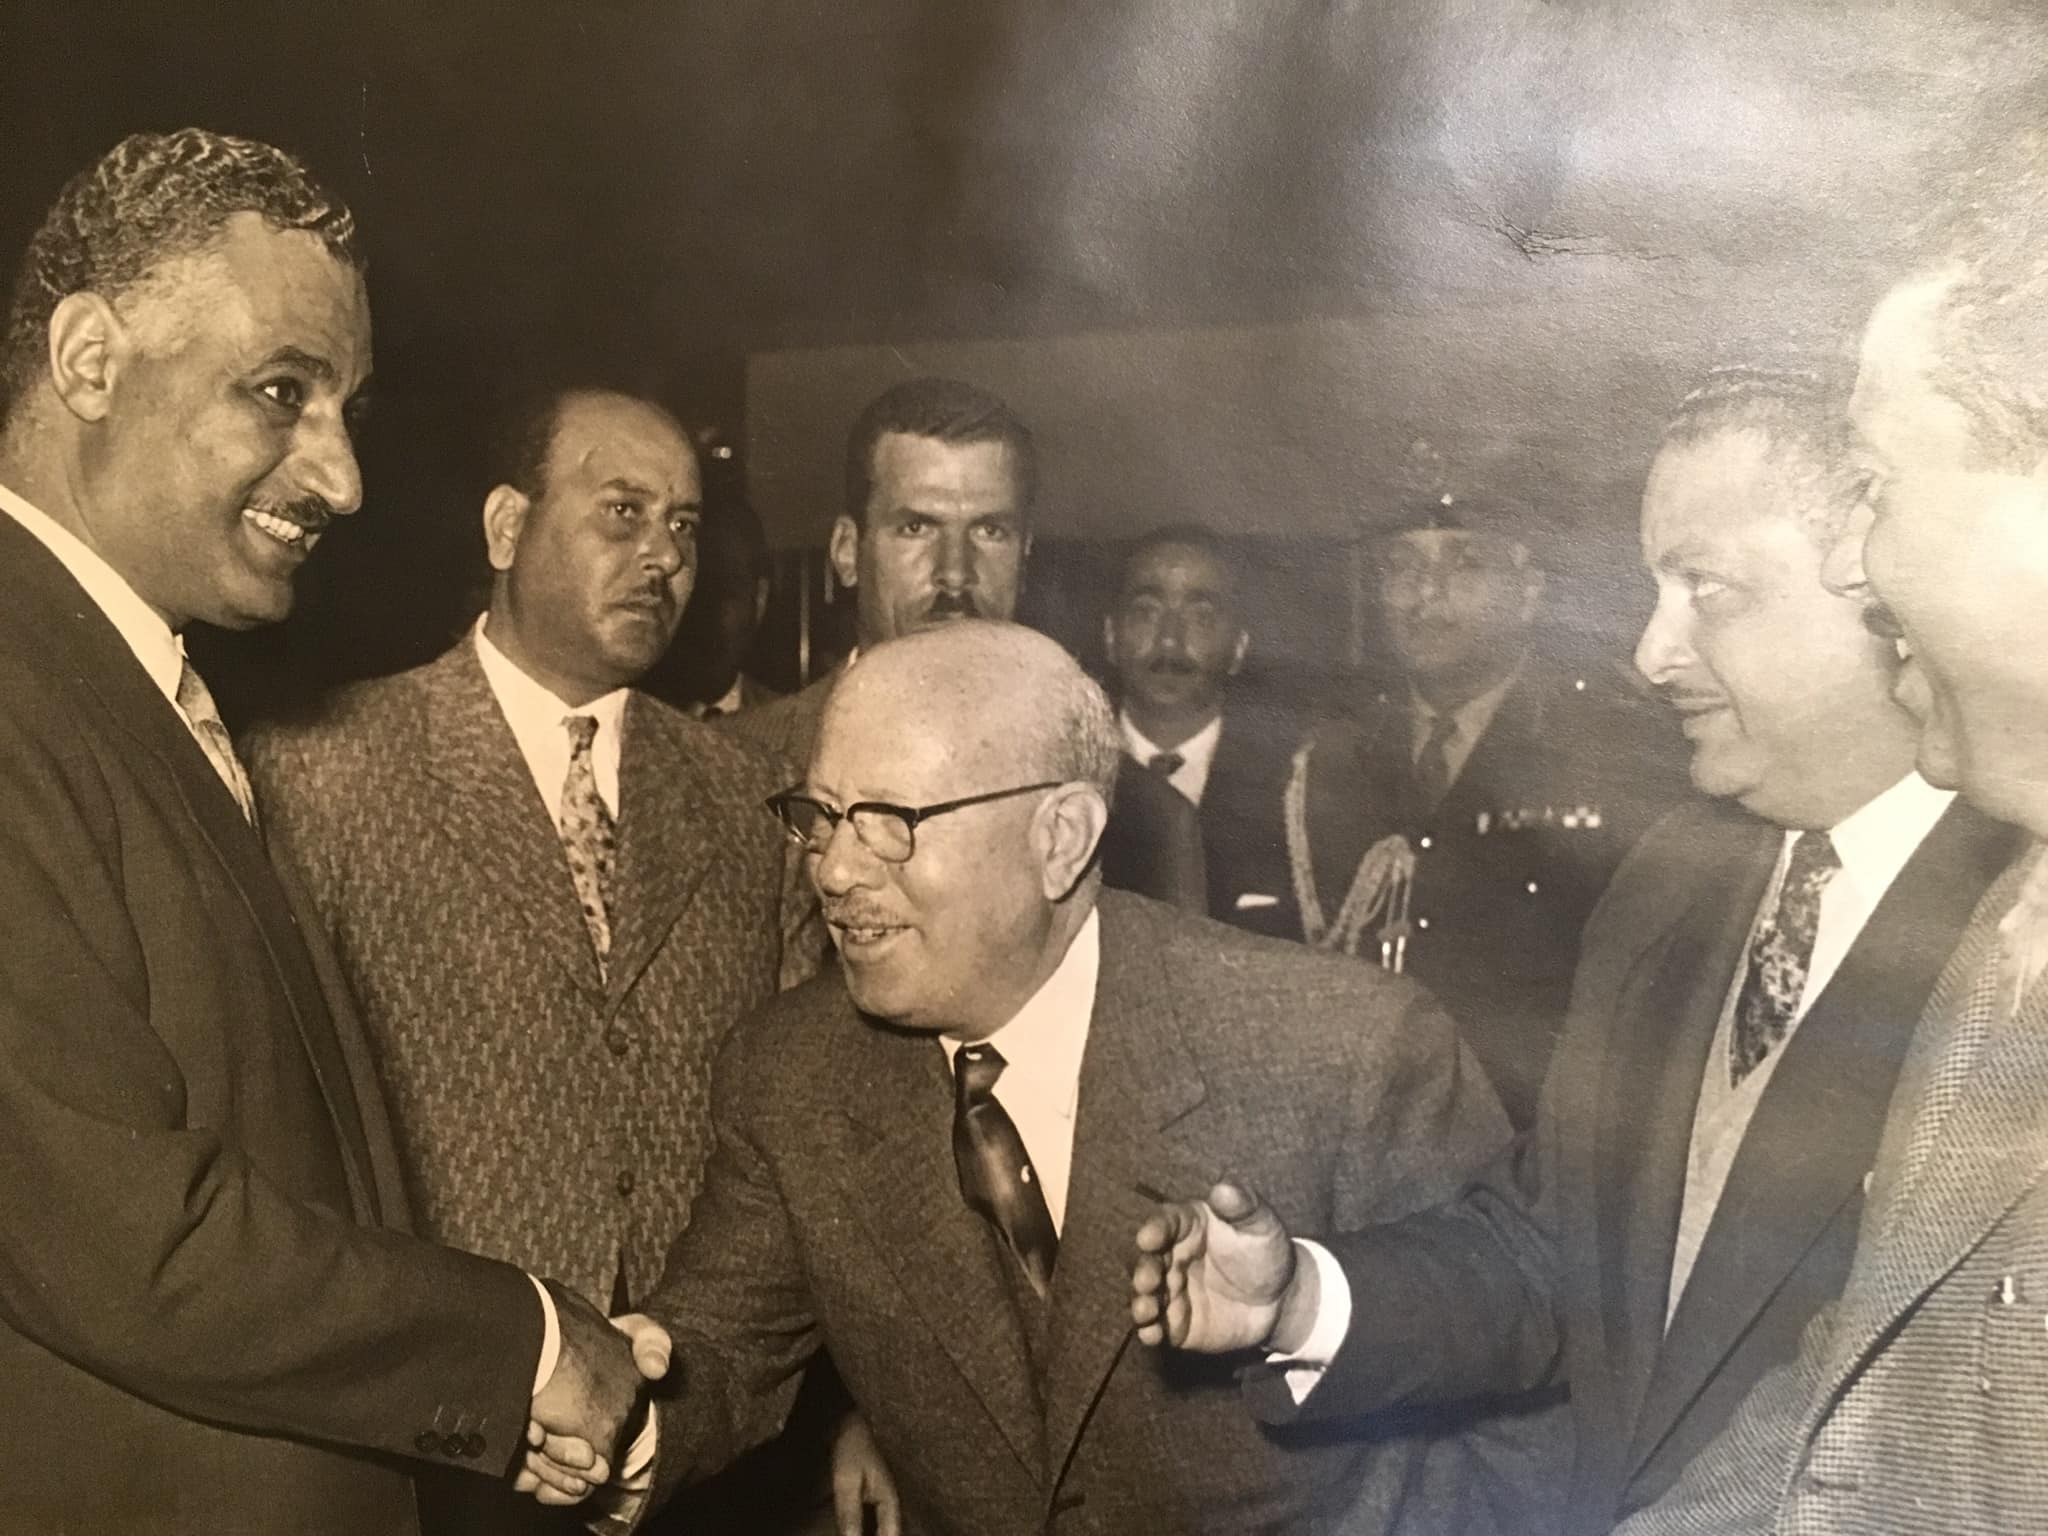 التاريخ السوري المعاصر - محمد بهجت الكسم مع جمال عبد الناصر 1962